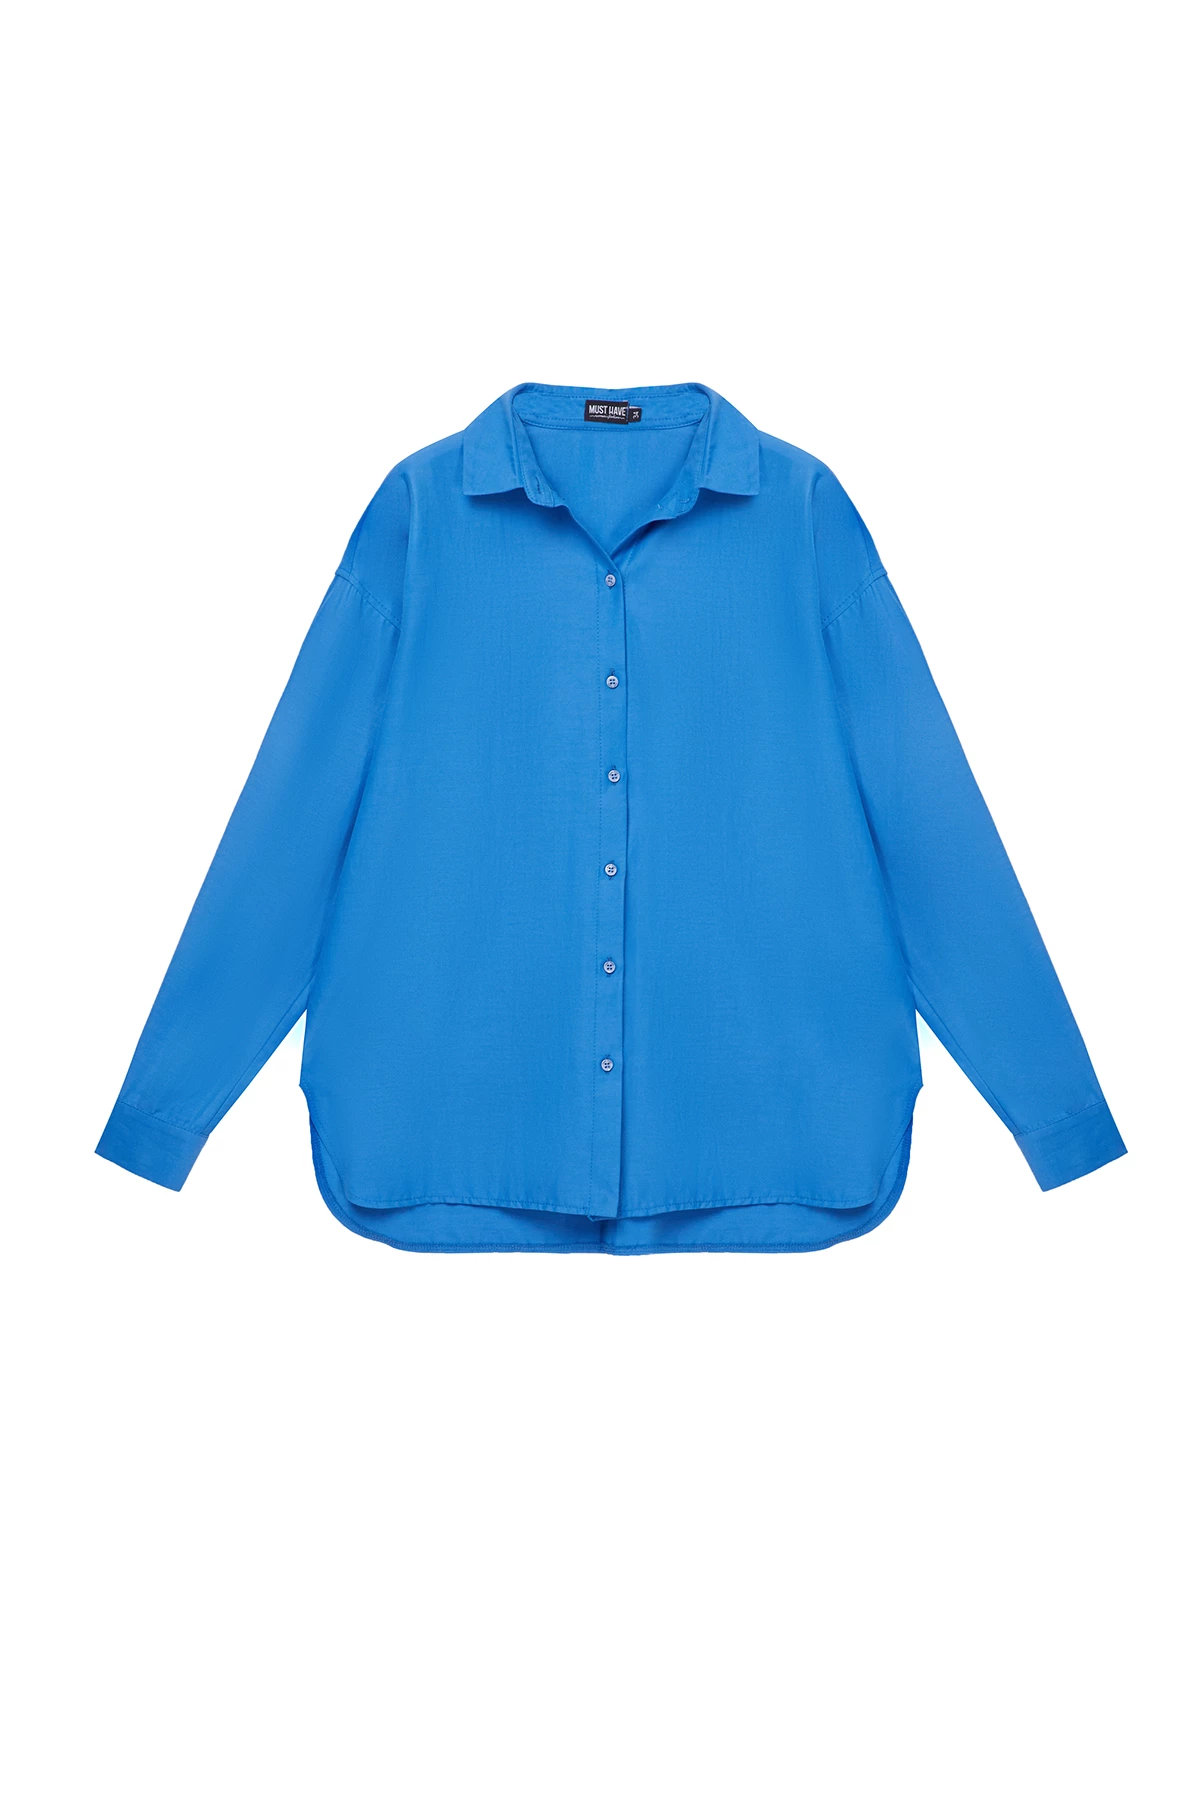 Loose-fit blue cotton shirt, photo 6